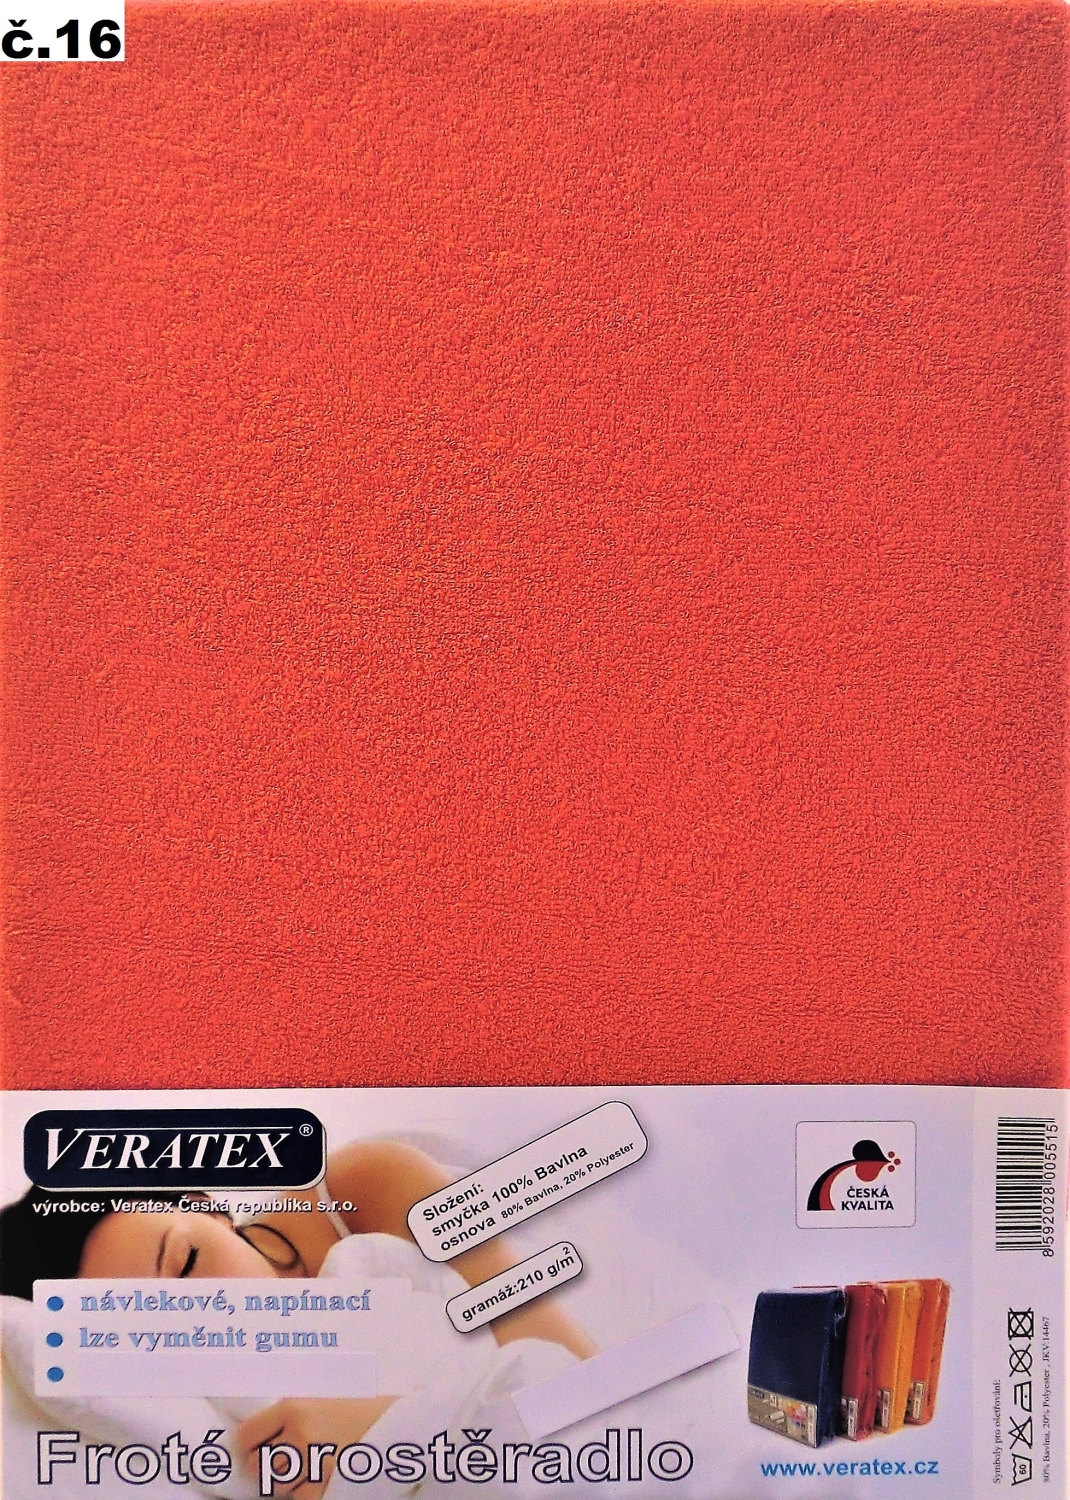 Veratex Froté prostěradlo 180x220/16 cm (č.16 malina)